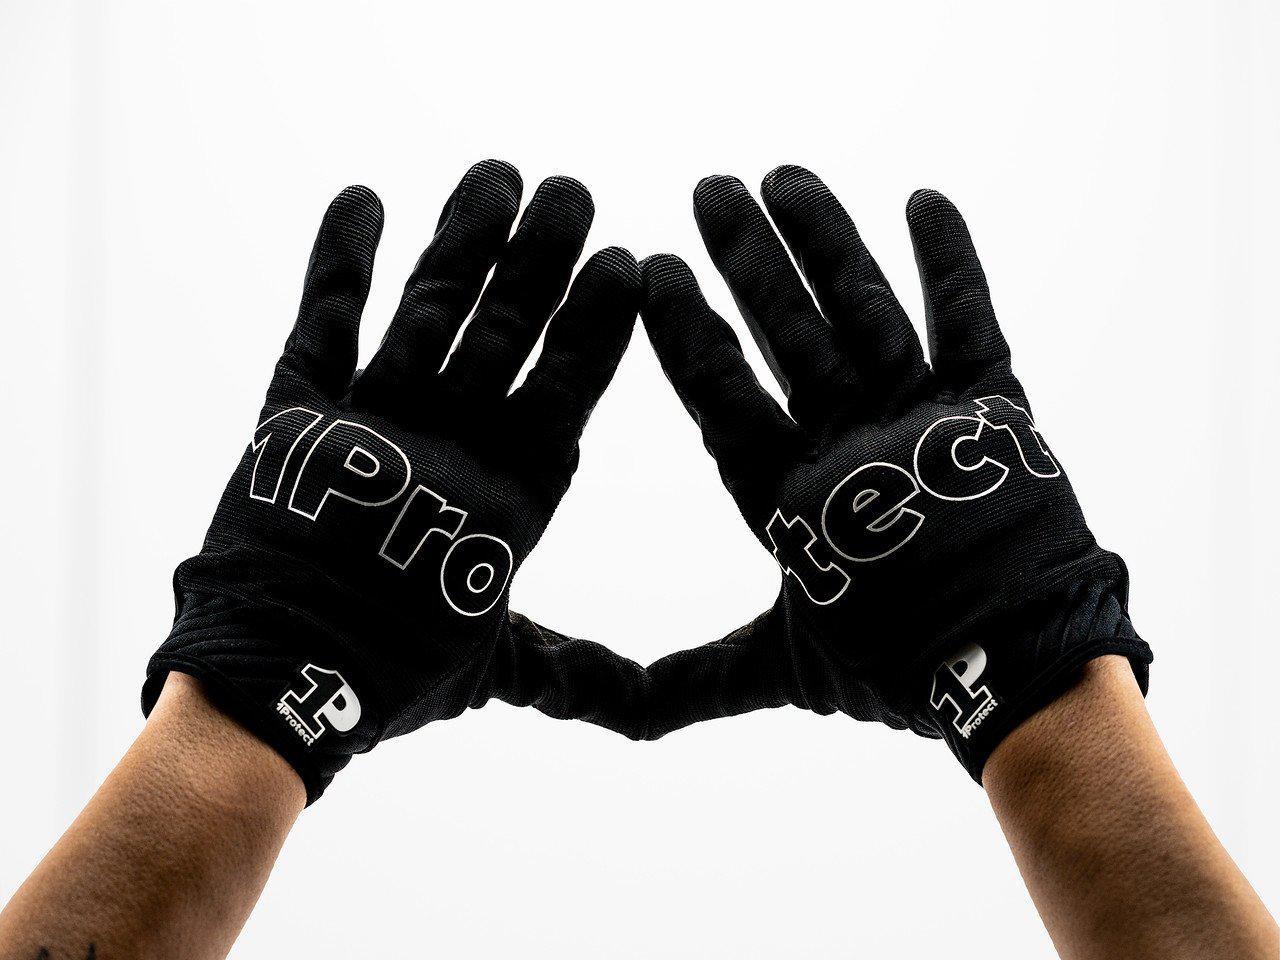 1Protect Full Finger Gloves